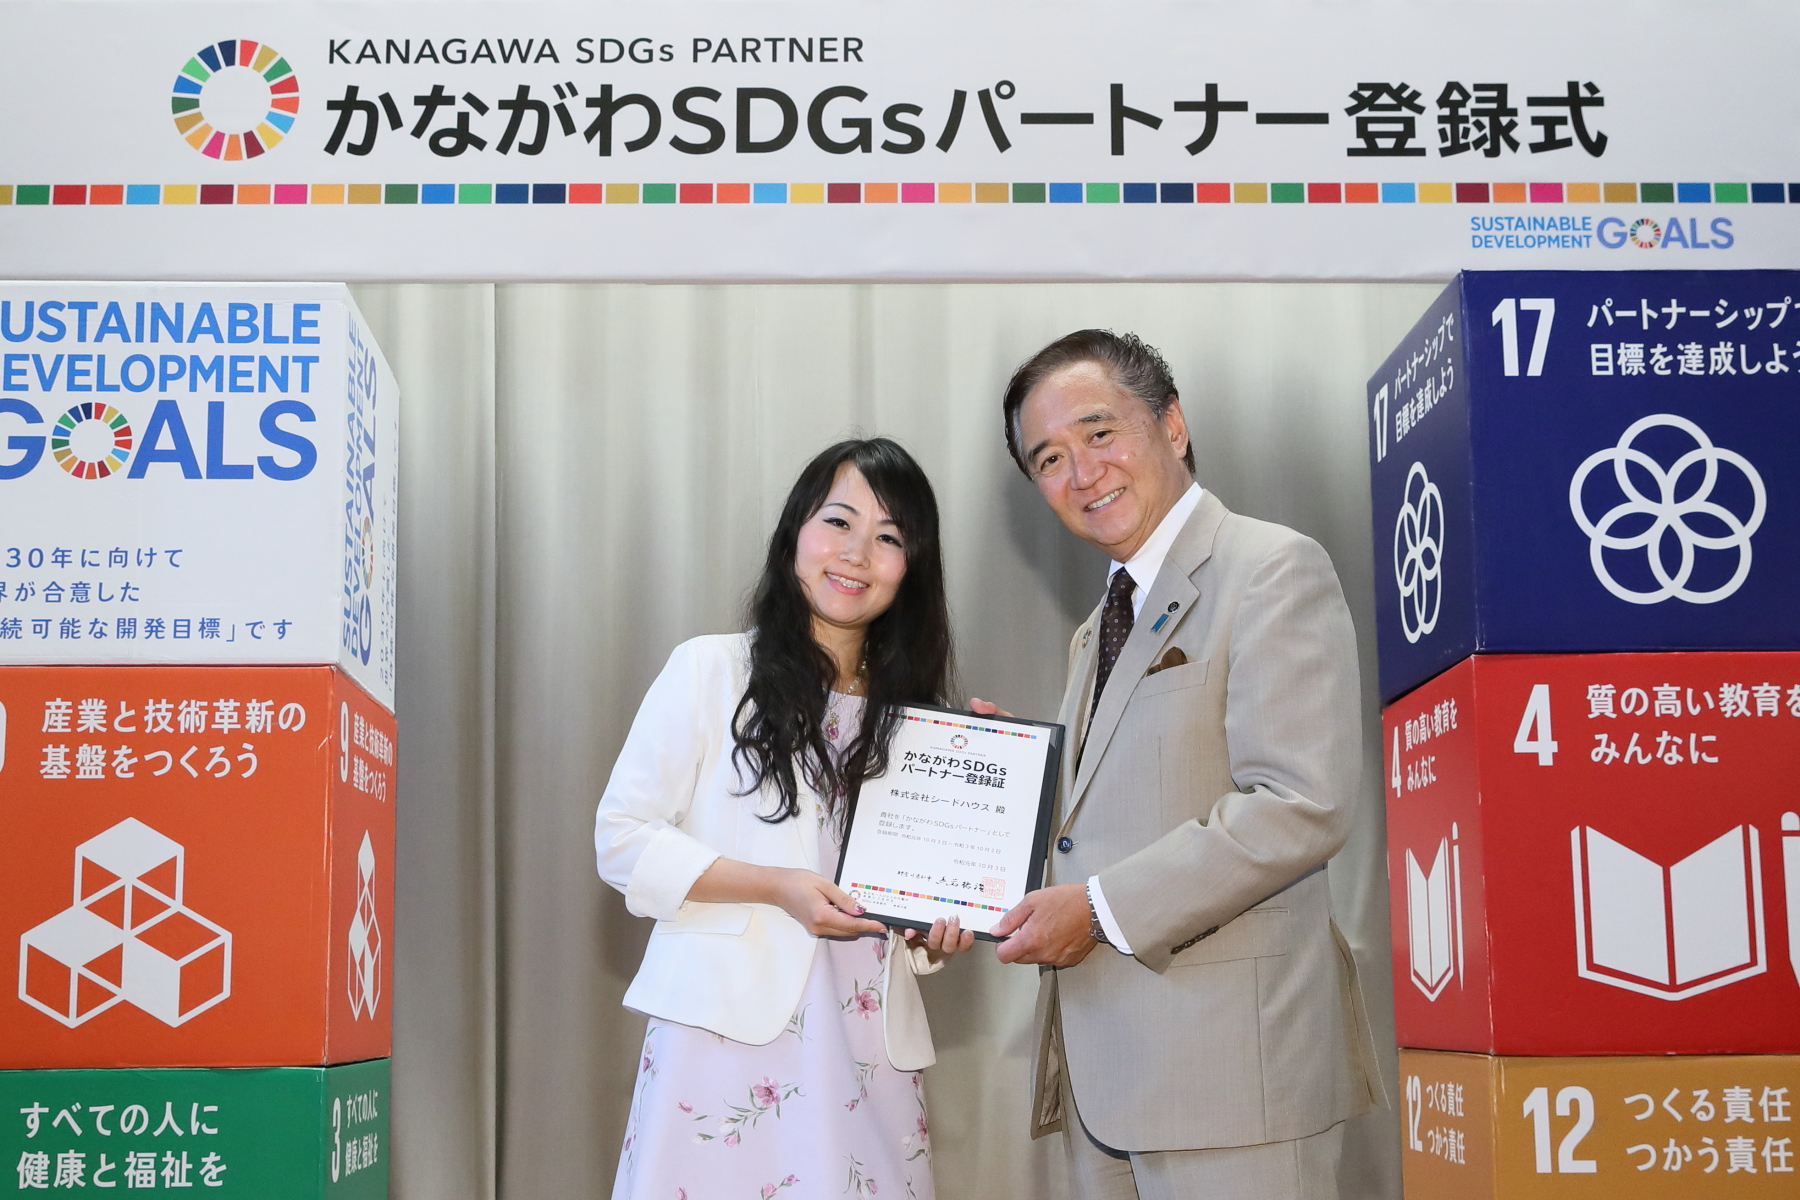 神奈川県SDGsパートナー登録式に参加